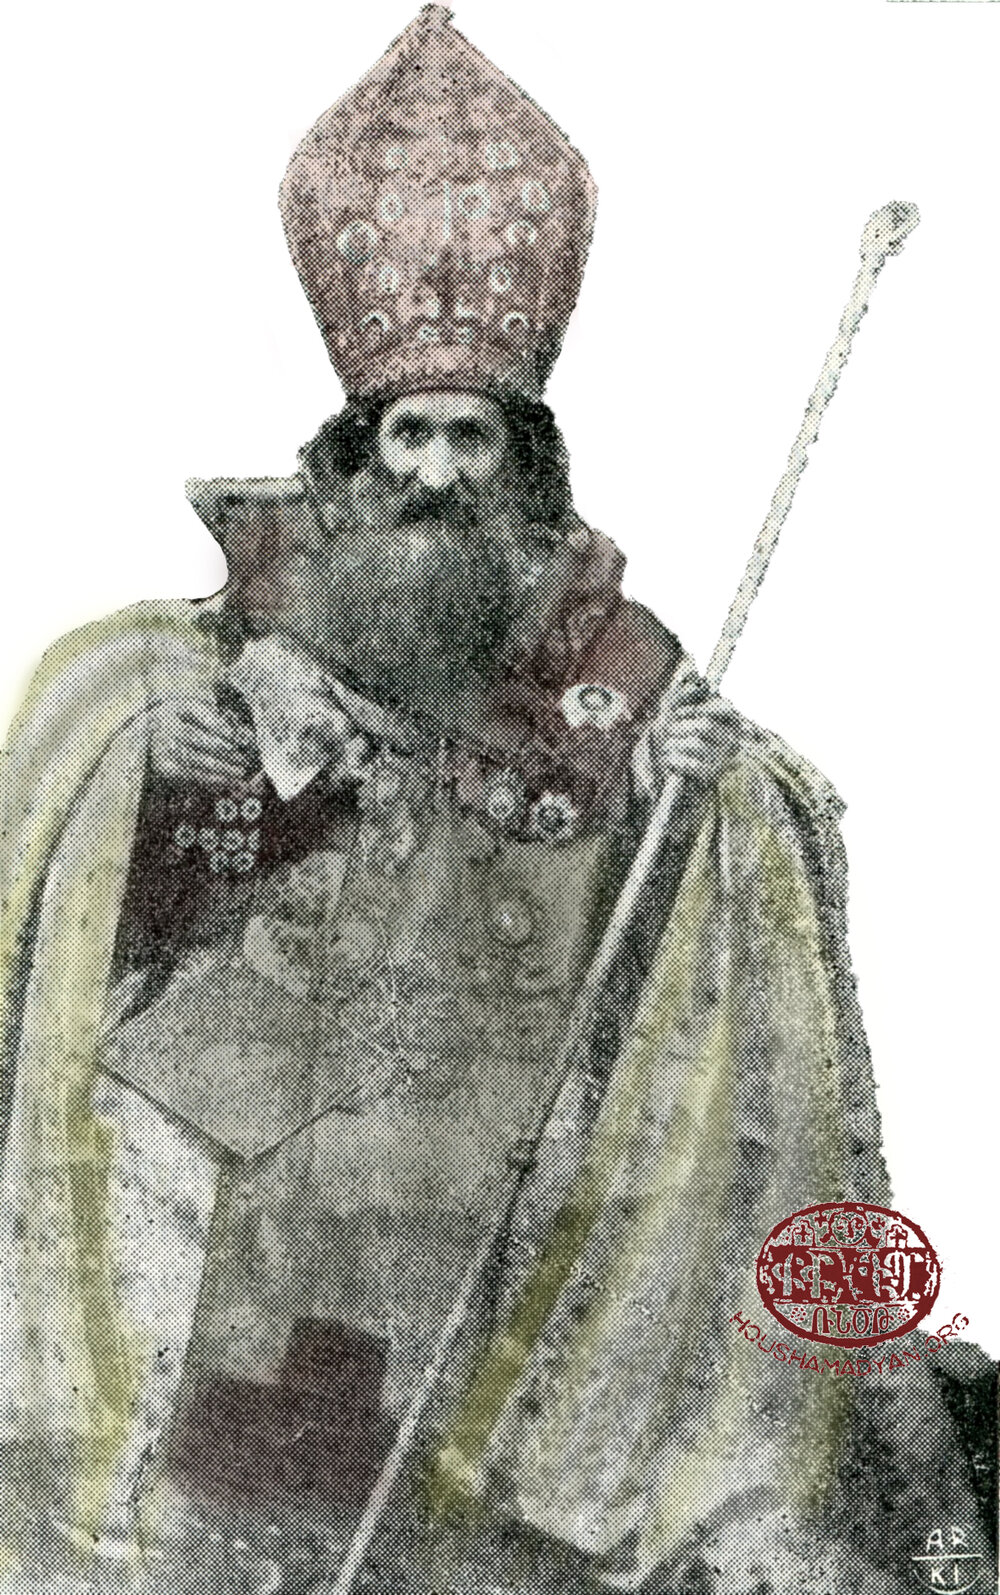 Մկրտիչ կաթողիկոս Քէֆսիզեան (1871-1894)